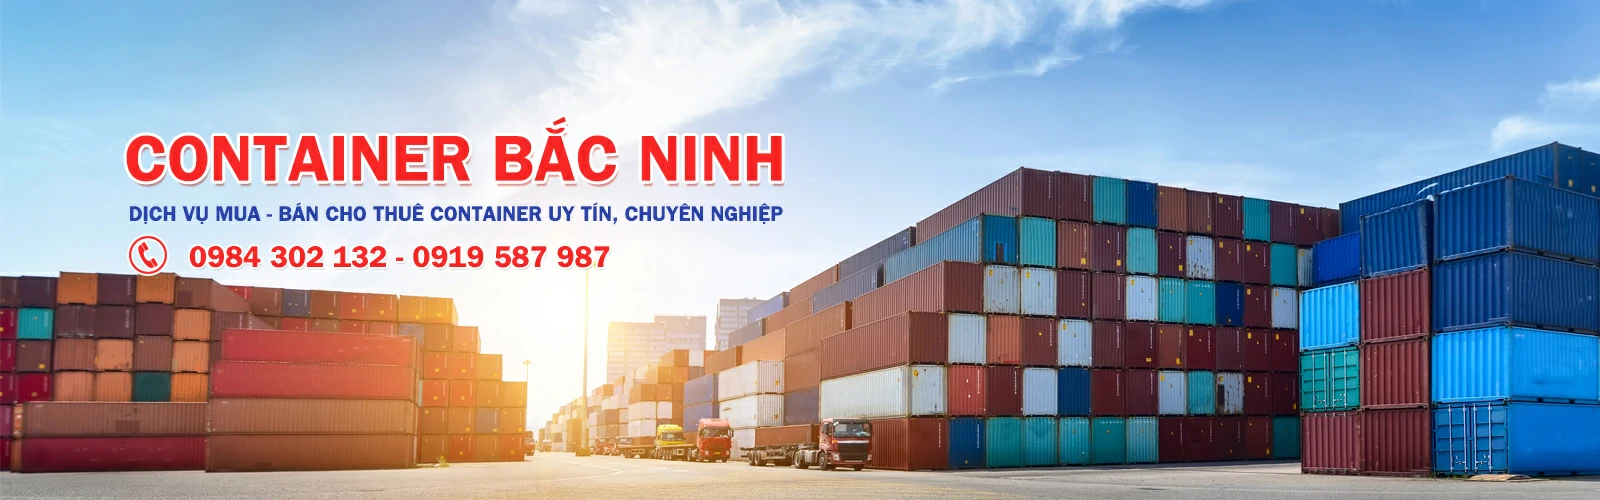 Dịch vụ cho thuê, mua bán container tại Bắc Ninh uy tín, chuyên nghiệp